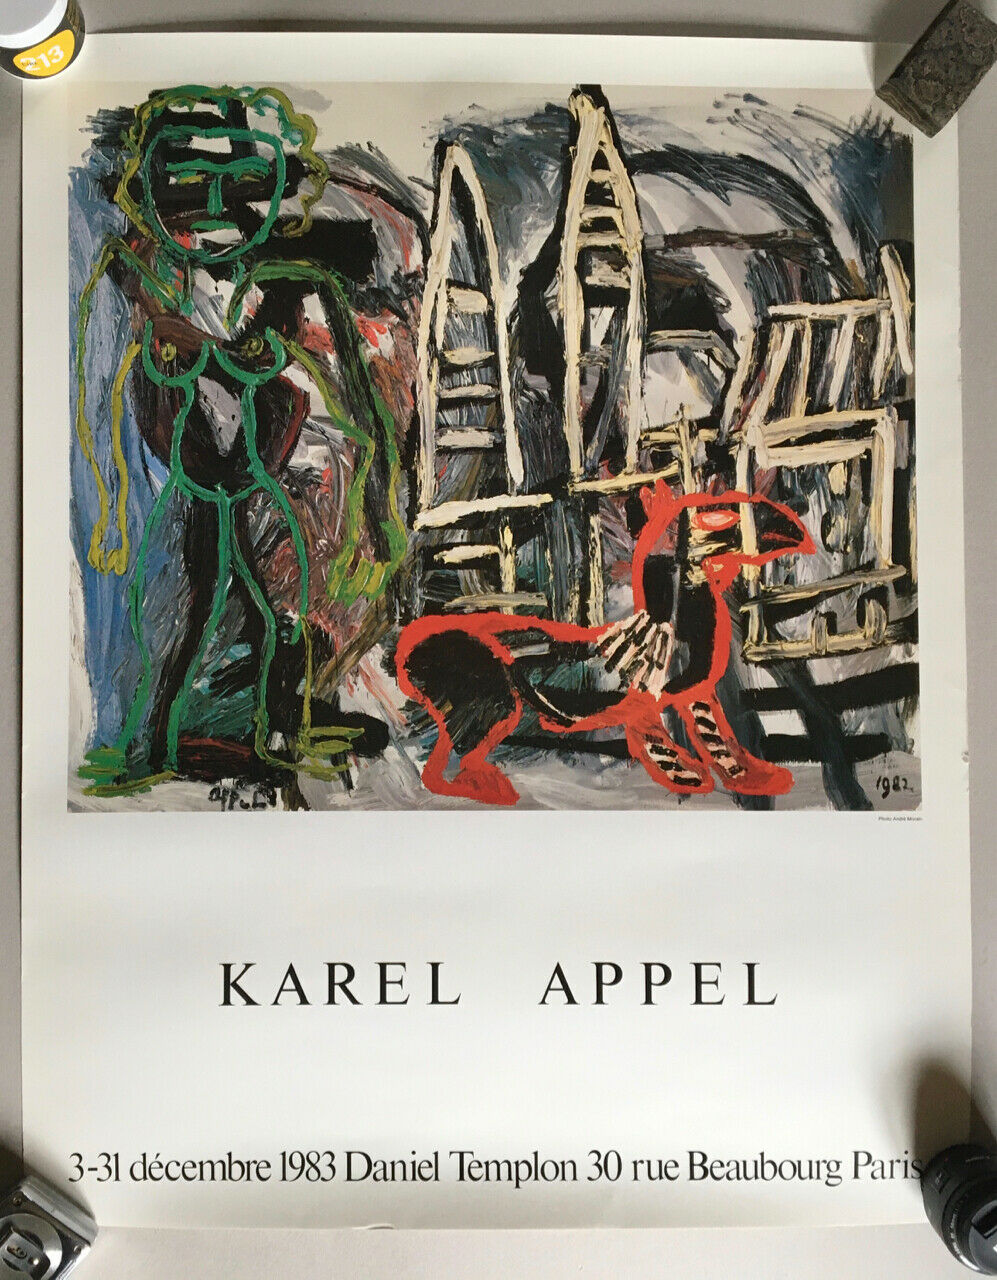 Karel Appel — Affiche d'exposition à la galerie Templon  — 62 x 78 cm. — 1983.